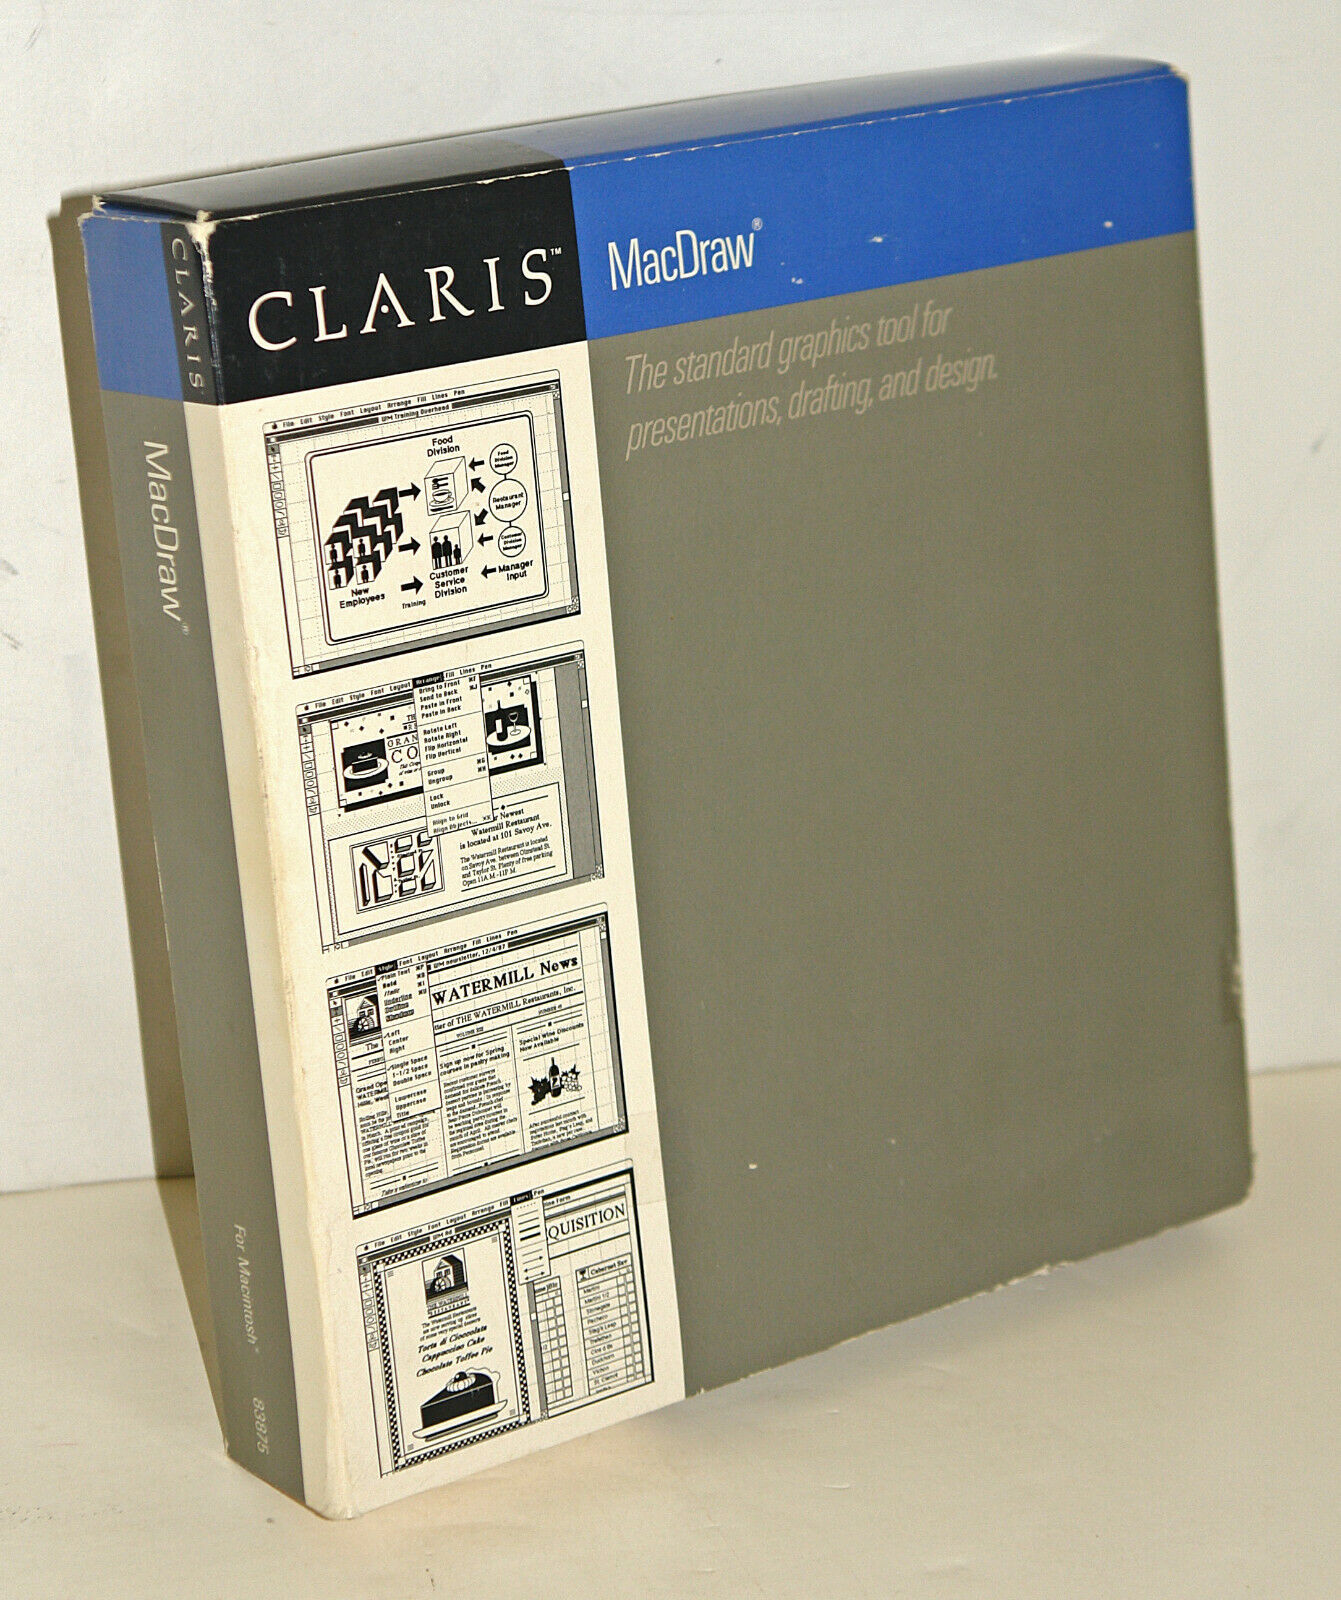 Claris Macdraw Software + Manuals For Vintage Apple Macintosh -- Original Box